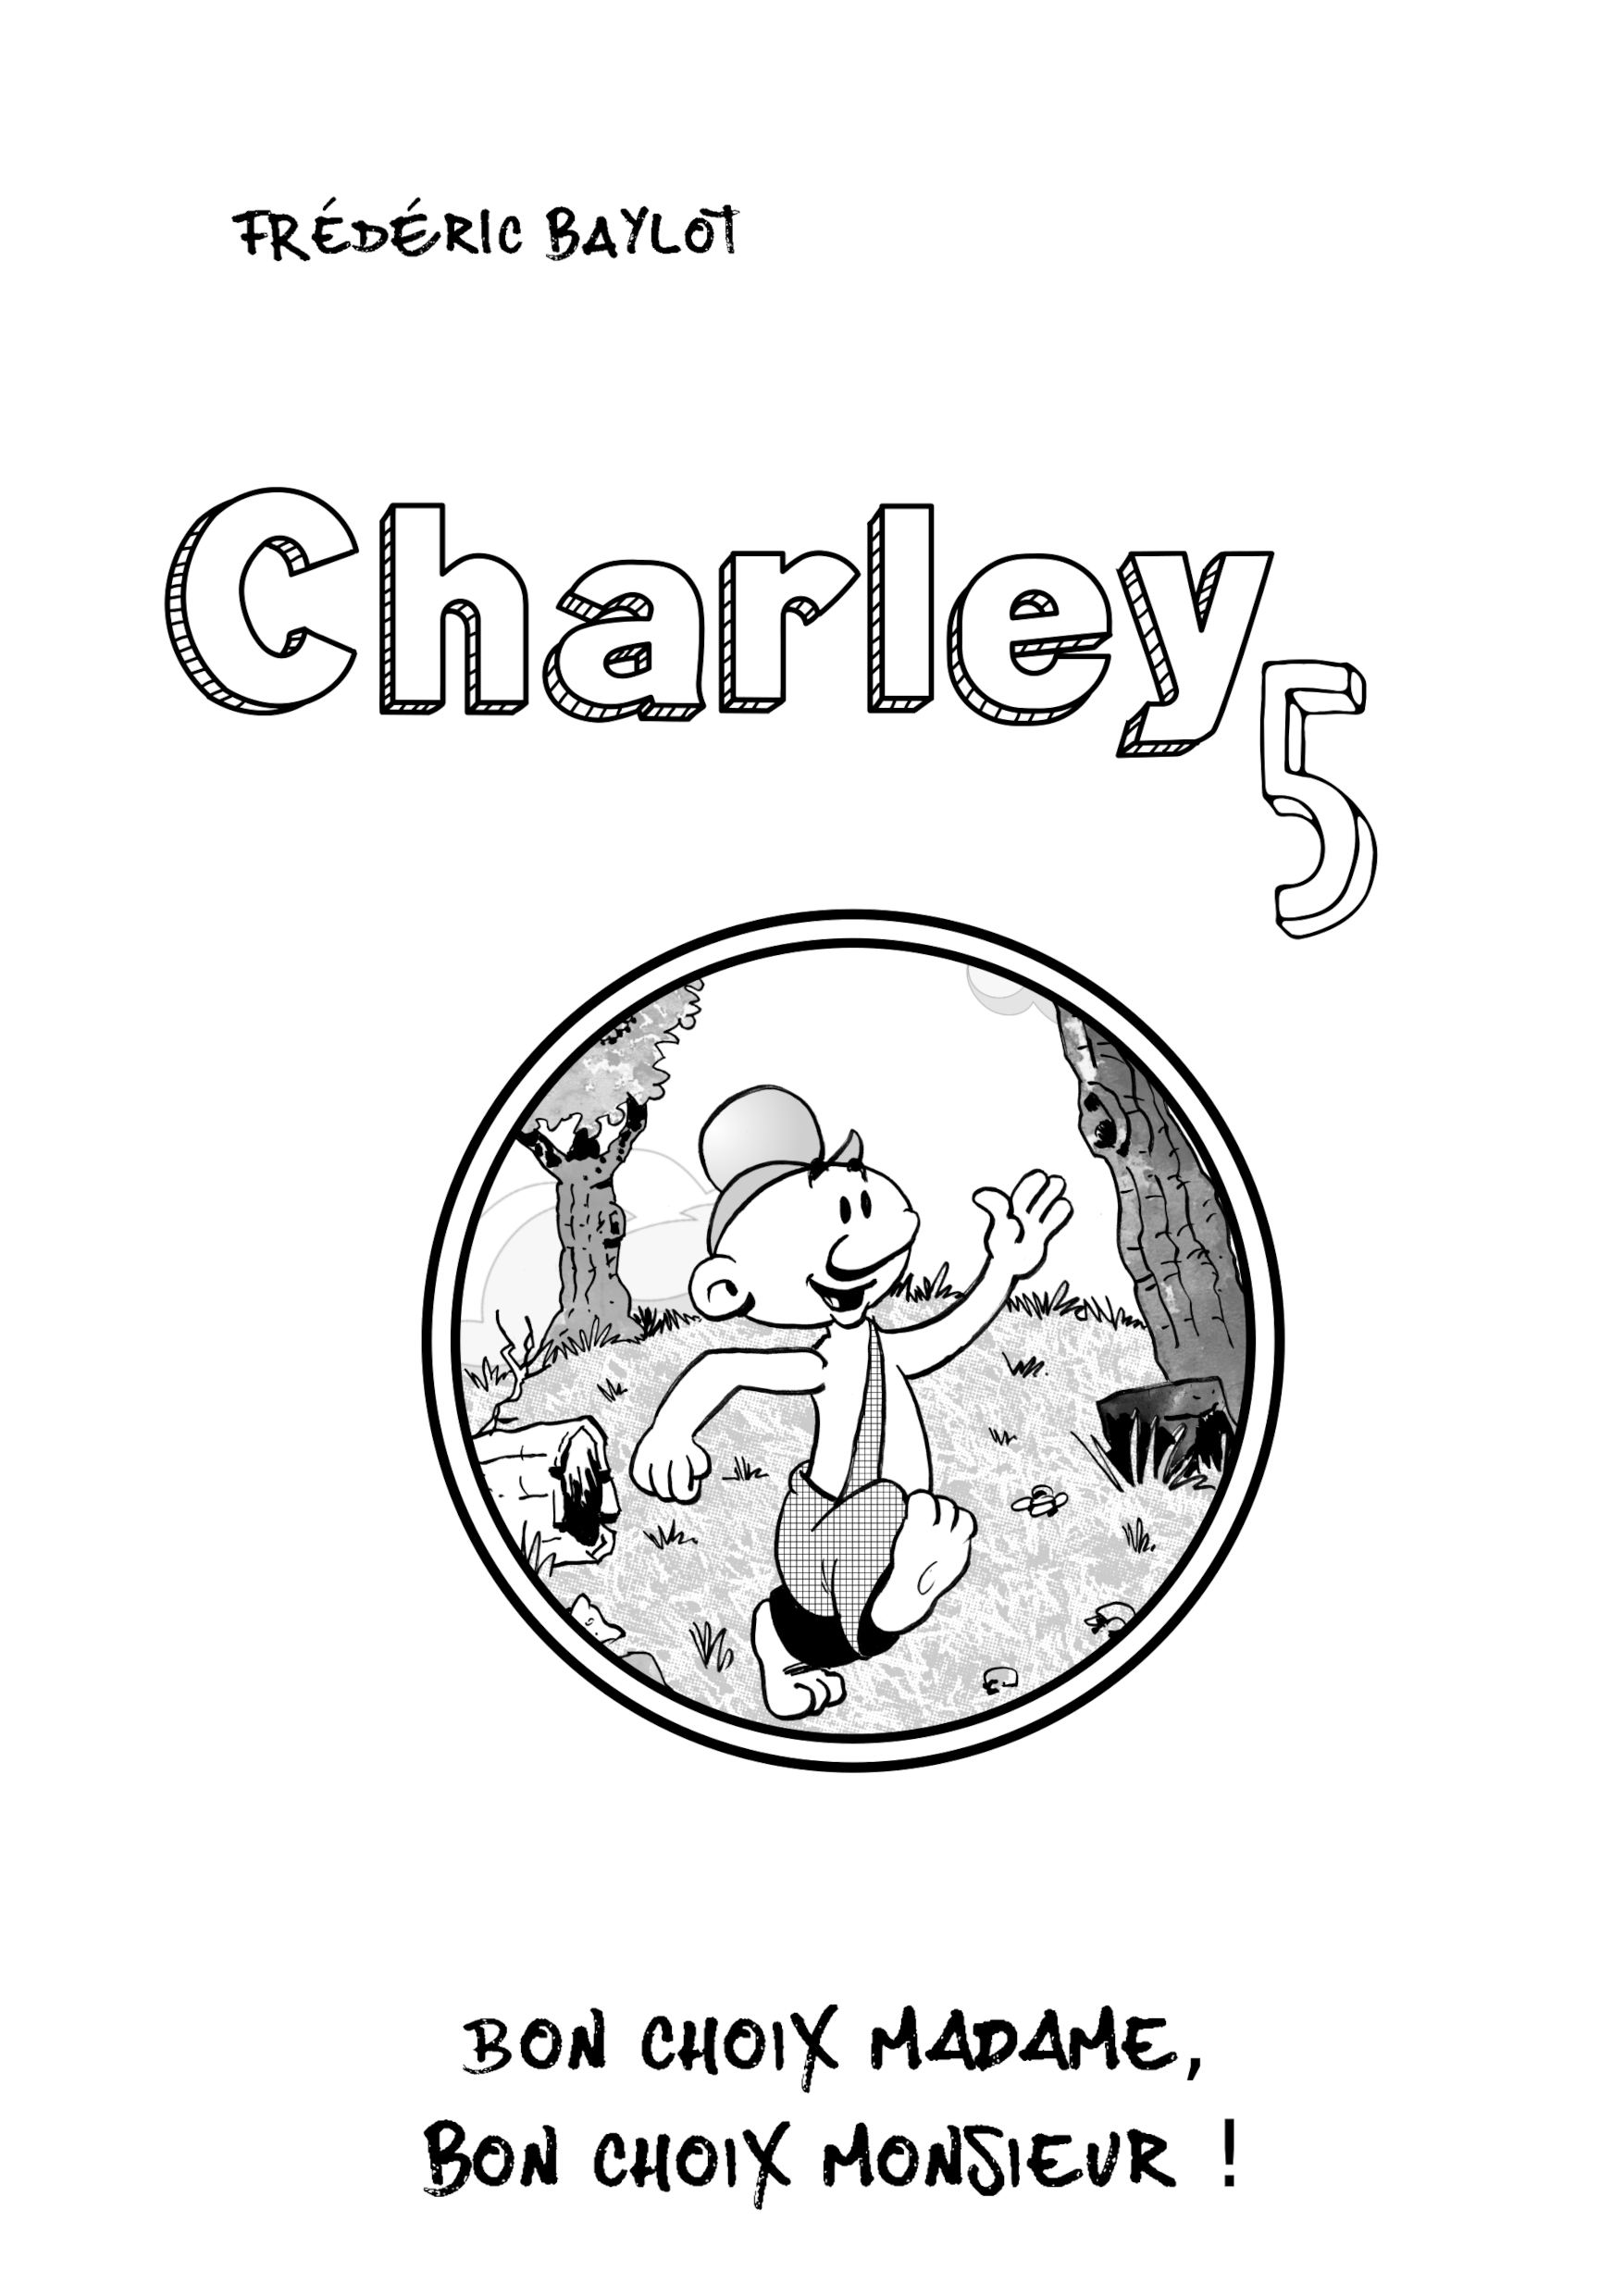 Charley 5 - Bon choix madame, bon choi